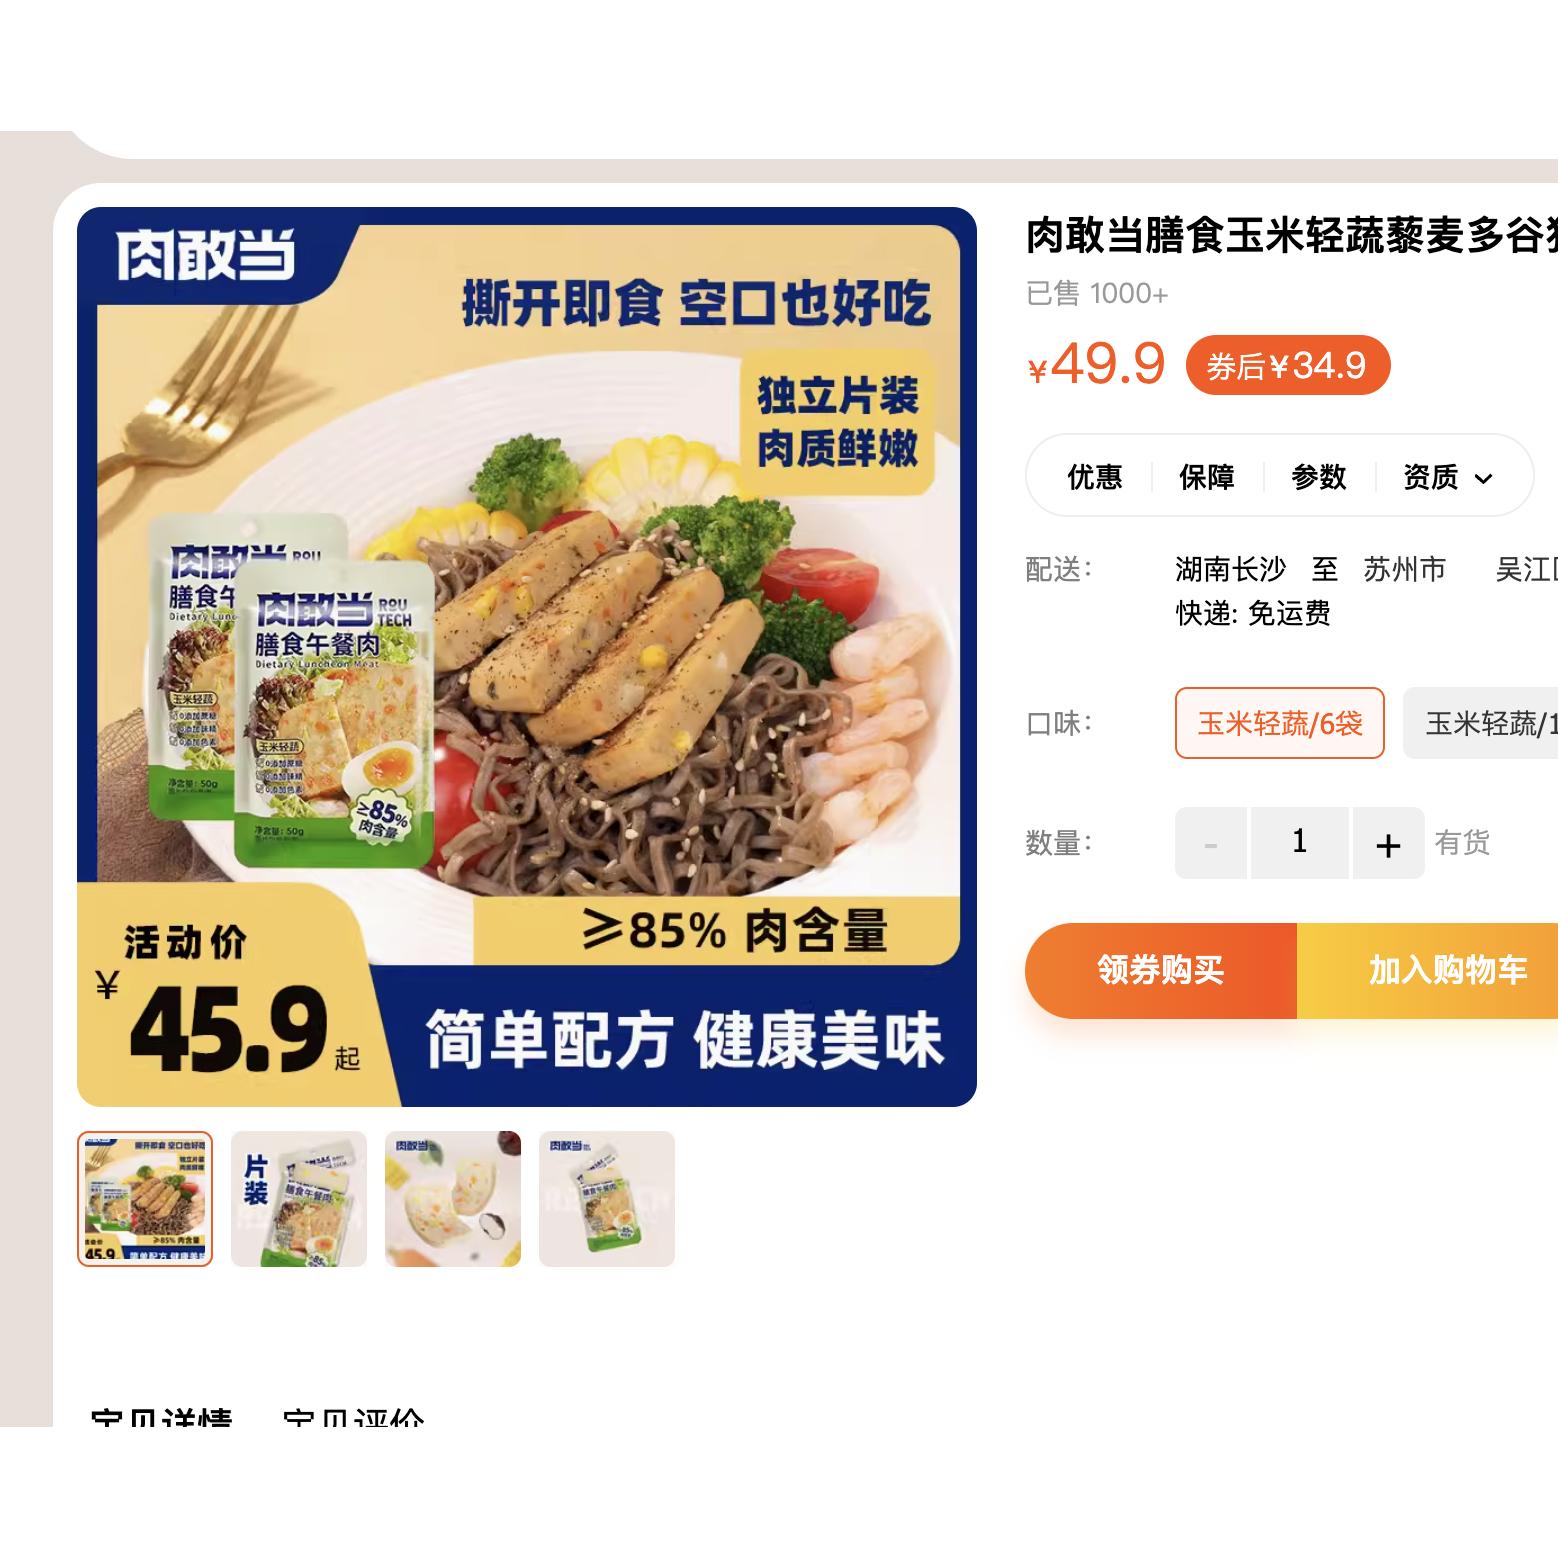 【官旗30+】裸价临期 肉敢当膳食玉米轻蔬午餐肉300g